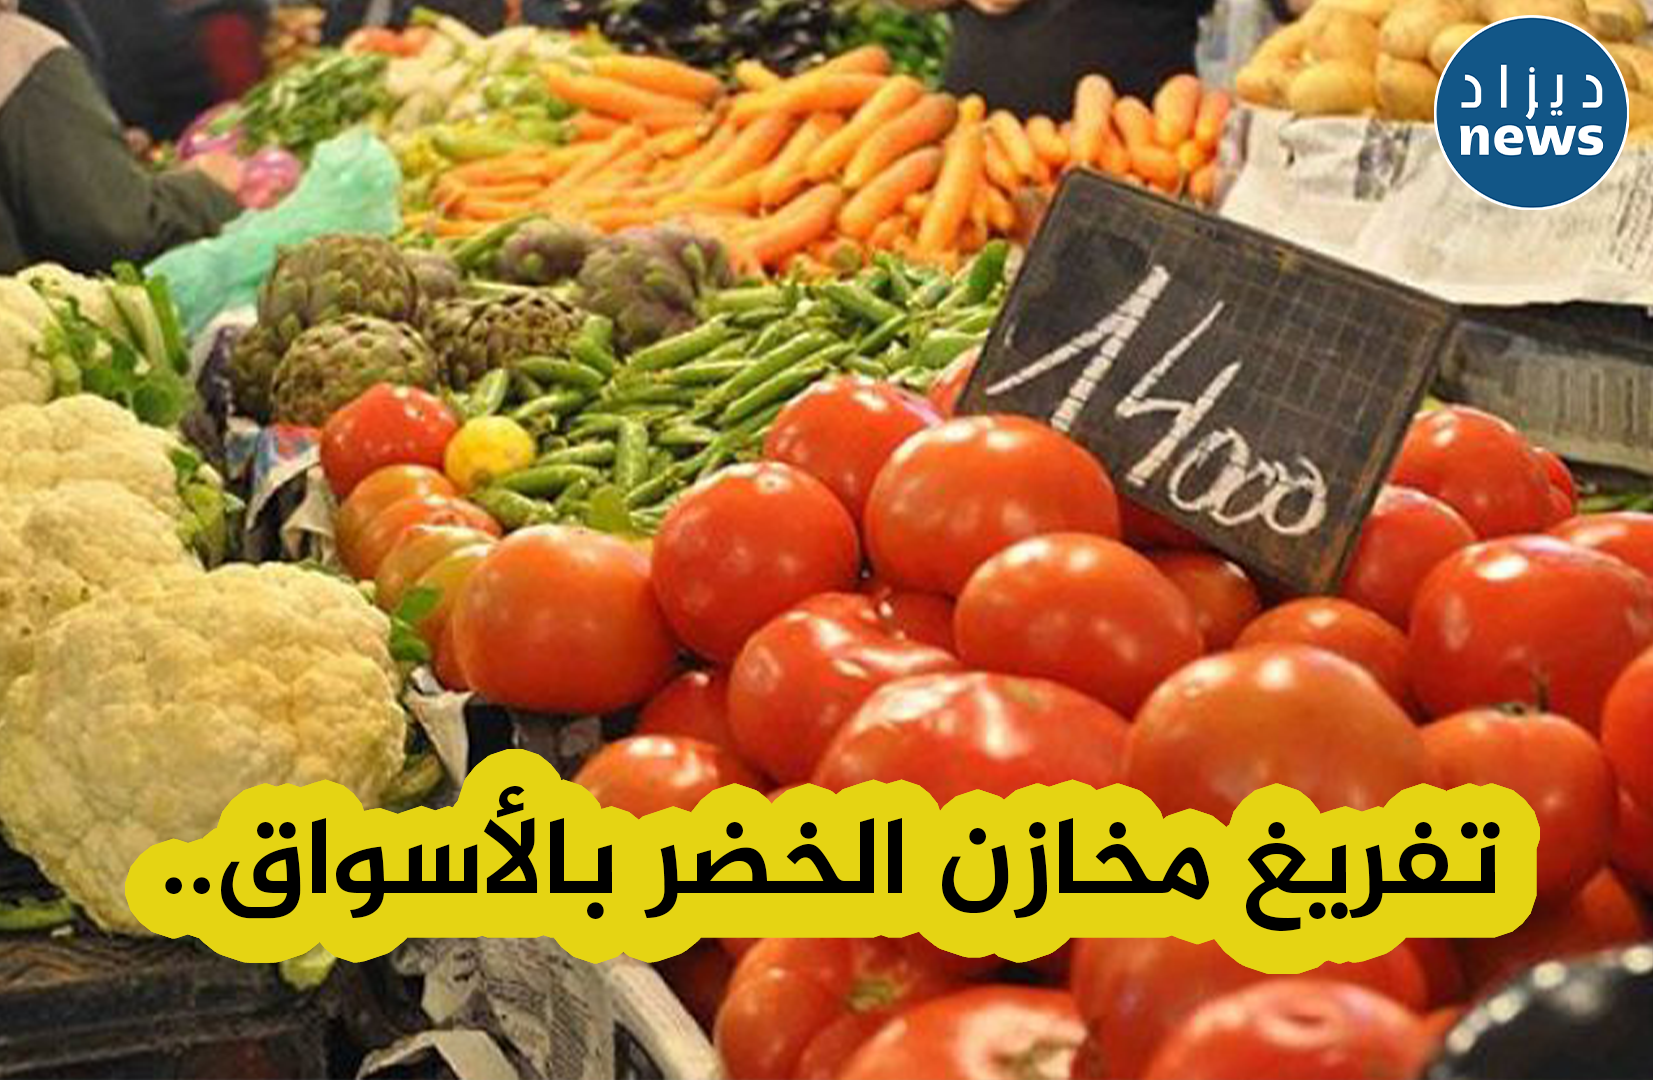 التفريغ الفوري لمخزونات الخضر خاصة منتوج البصل بهدف خفض أسعاره في السوق